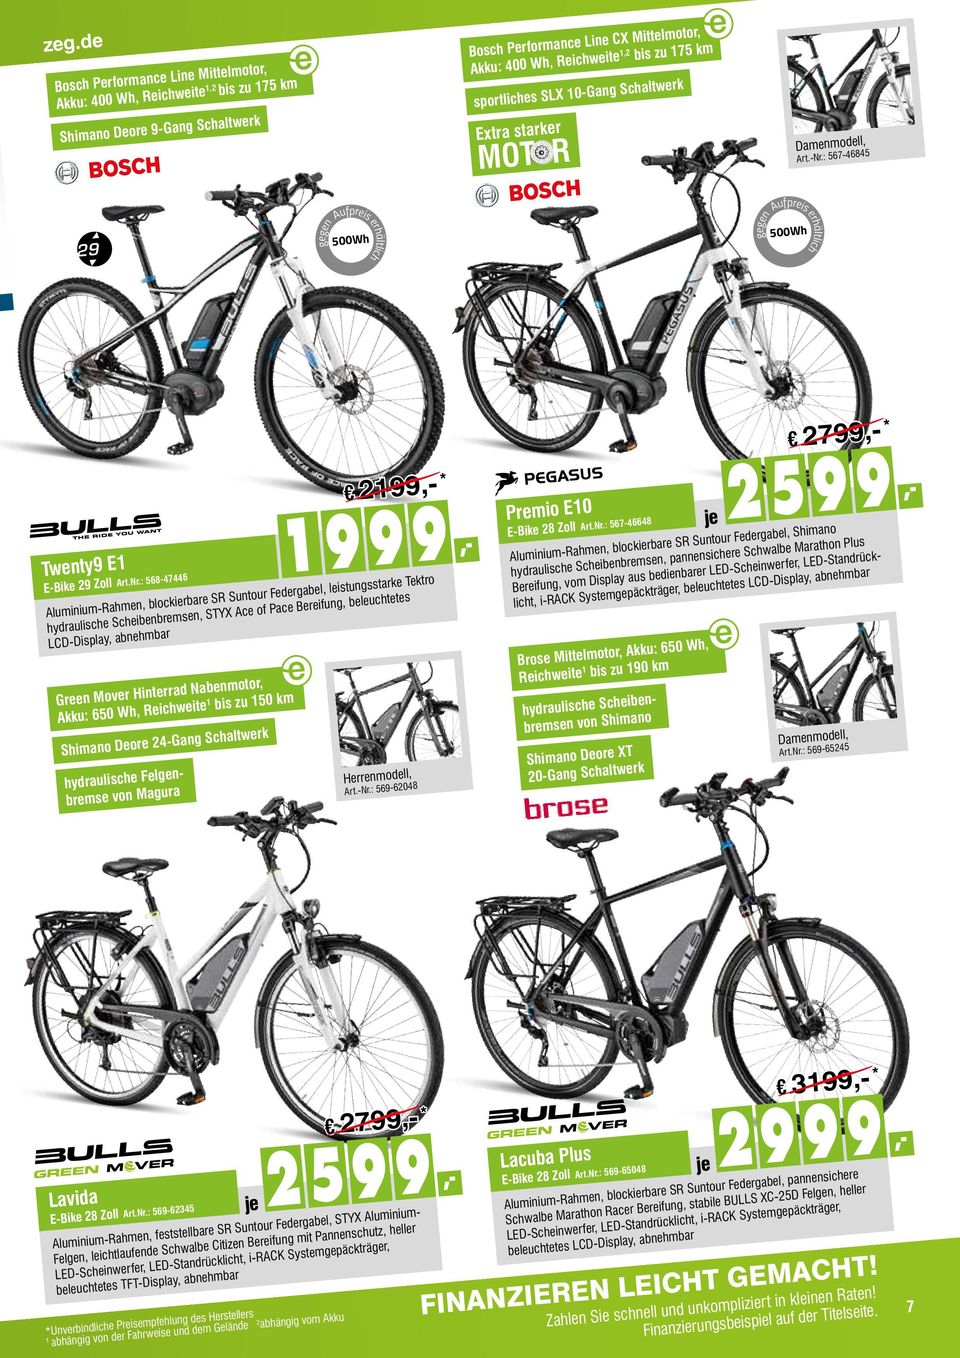 : 567-46845 500Wh gegen Aufpreis erhältlich 500Wh gegen Aufpreis erhältlich 2799,- Twenty9 E1 E-Bike 29 Zoll Art.Nr.